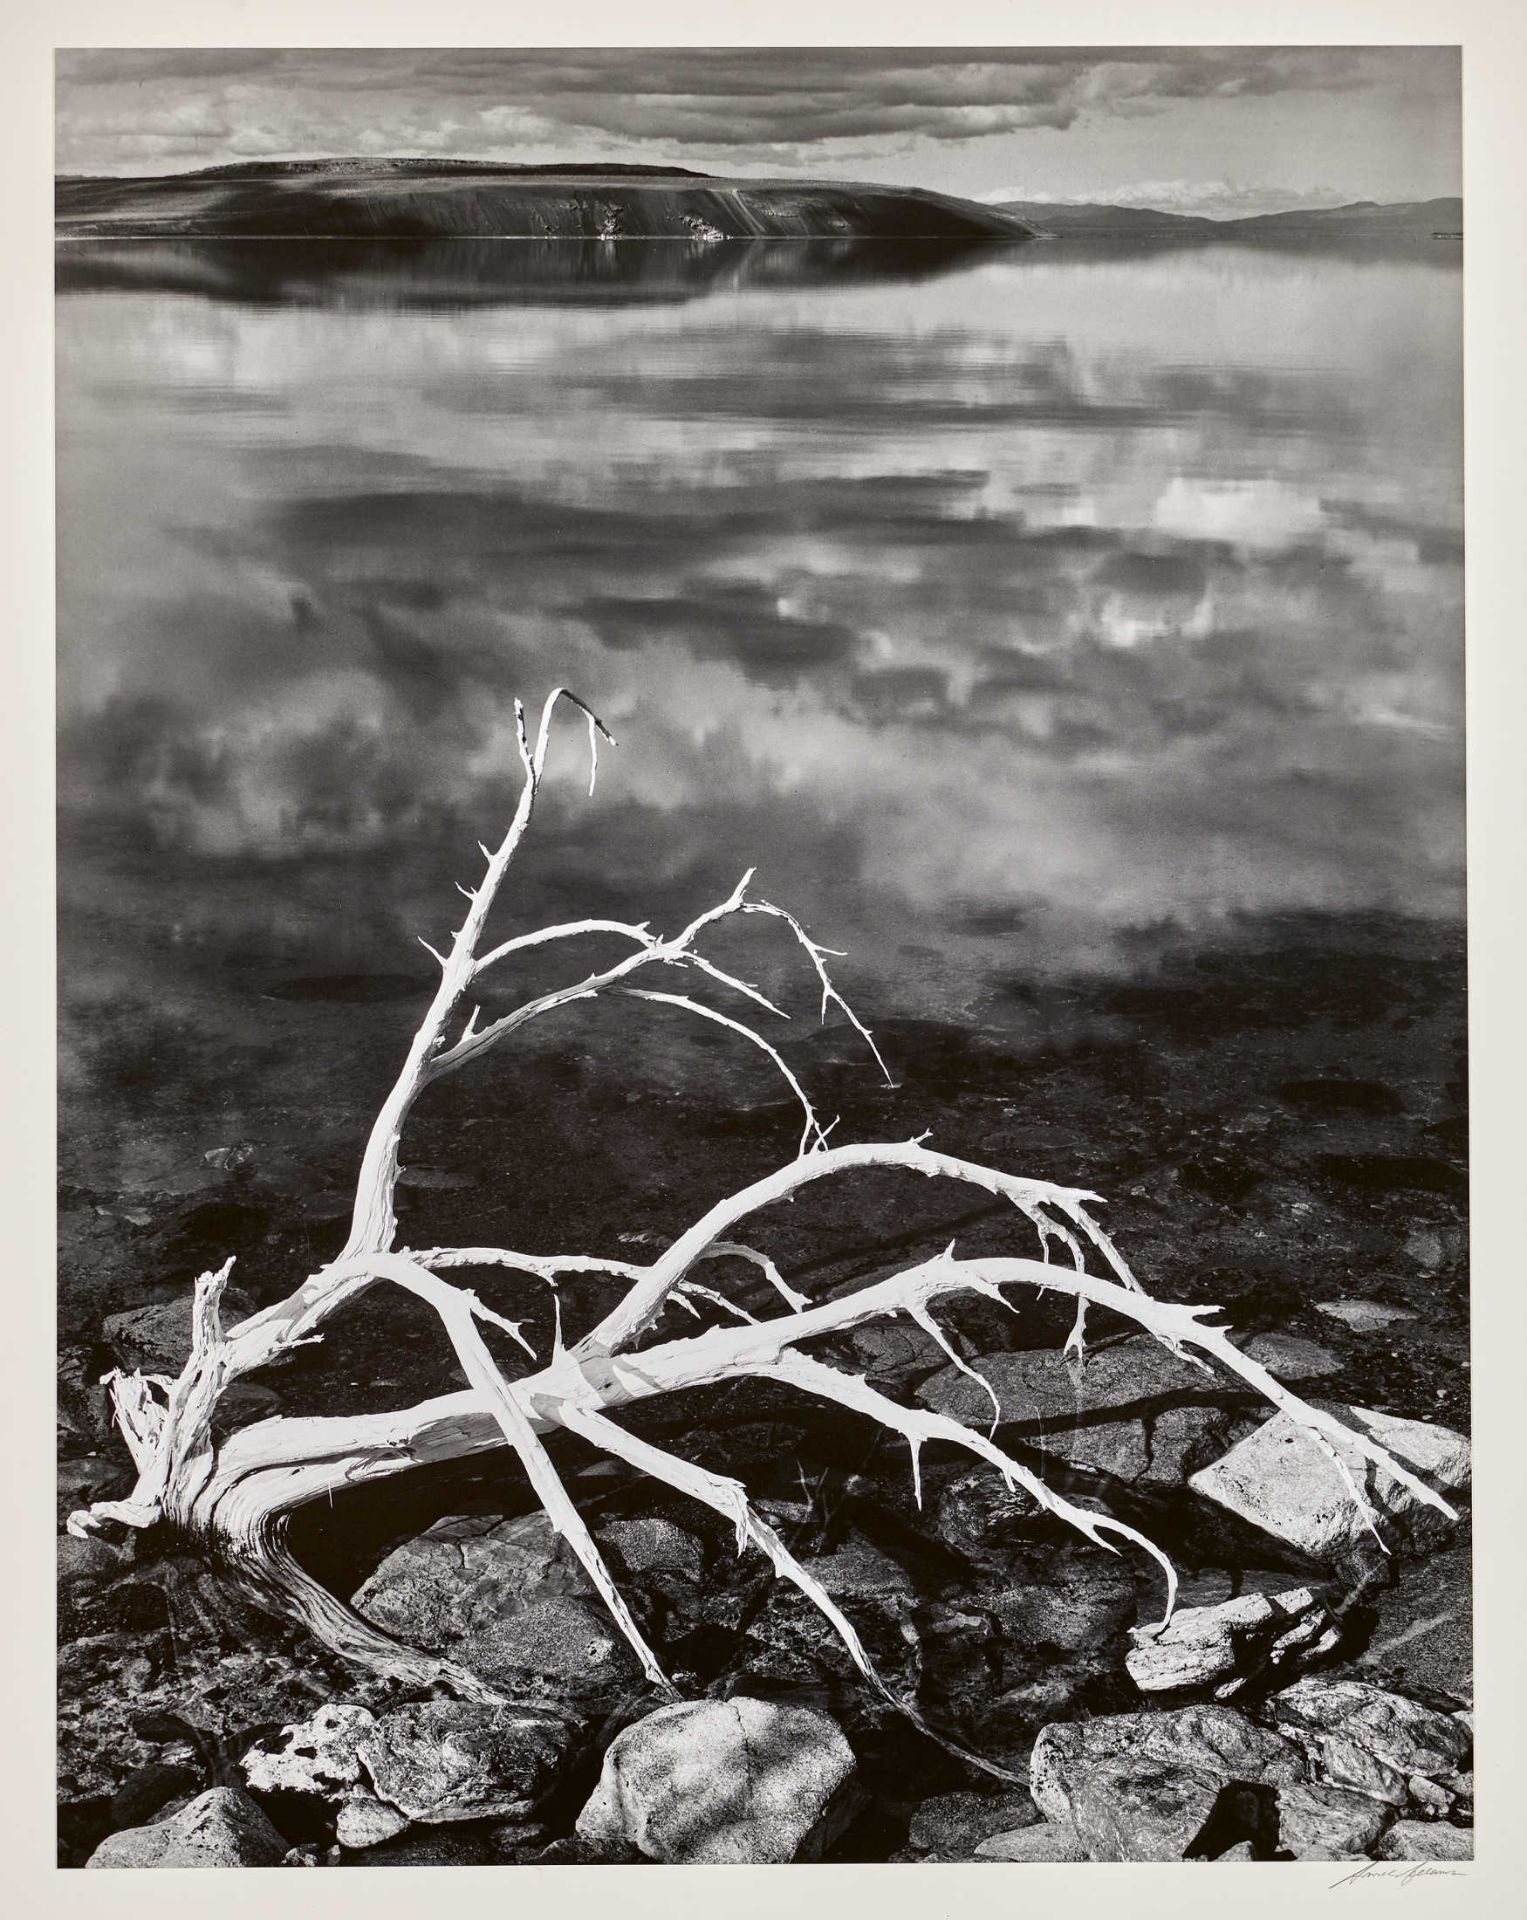 ADAMS, ANSELSan Francisco 1902 - 1984 CarmelWhite Branches, Mono Lake, um 1950.